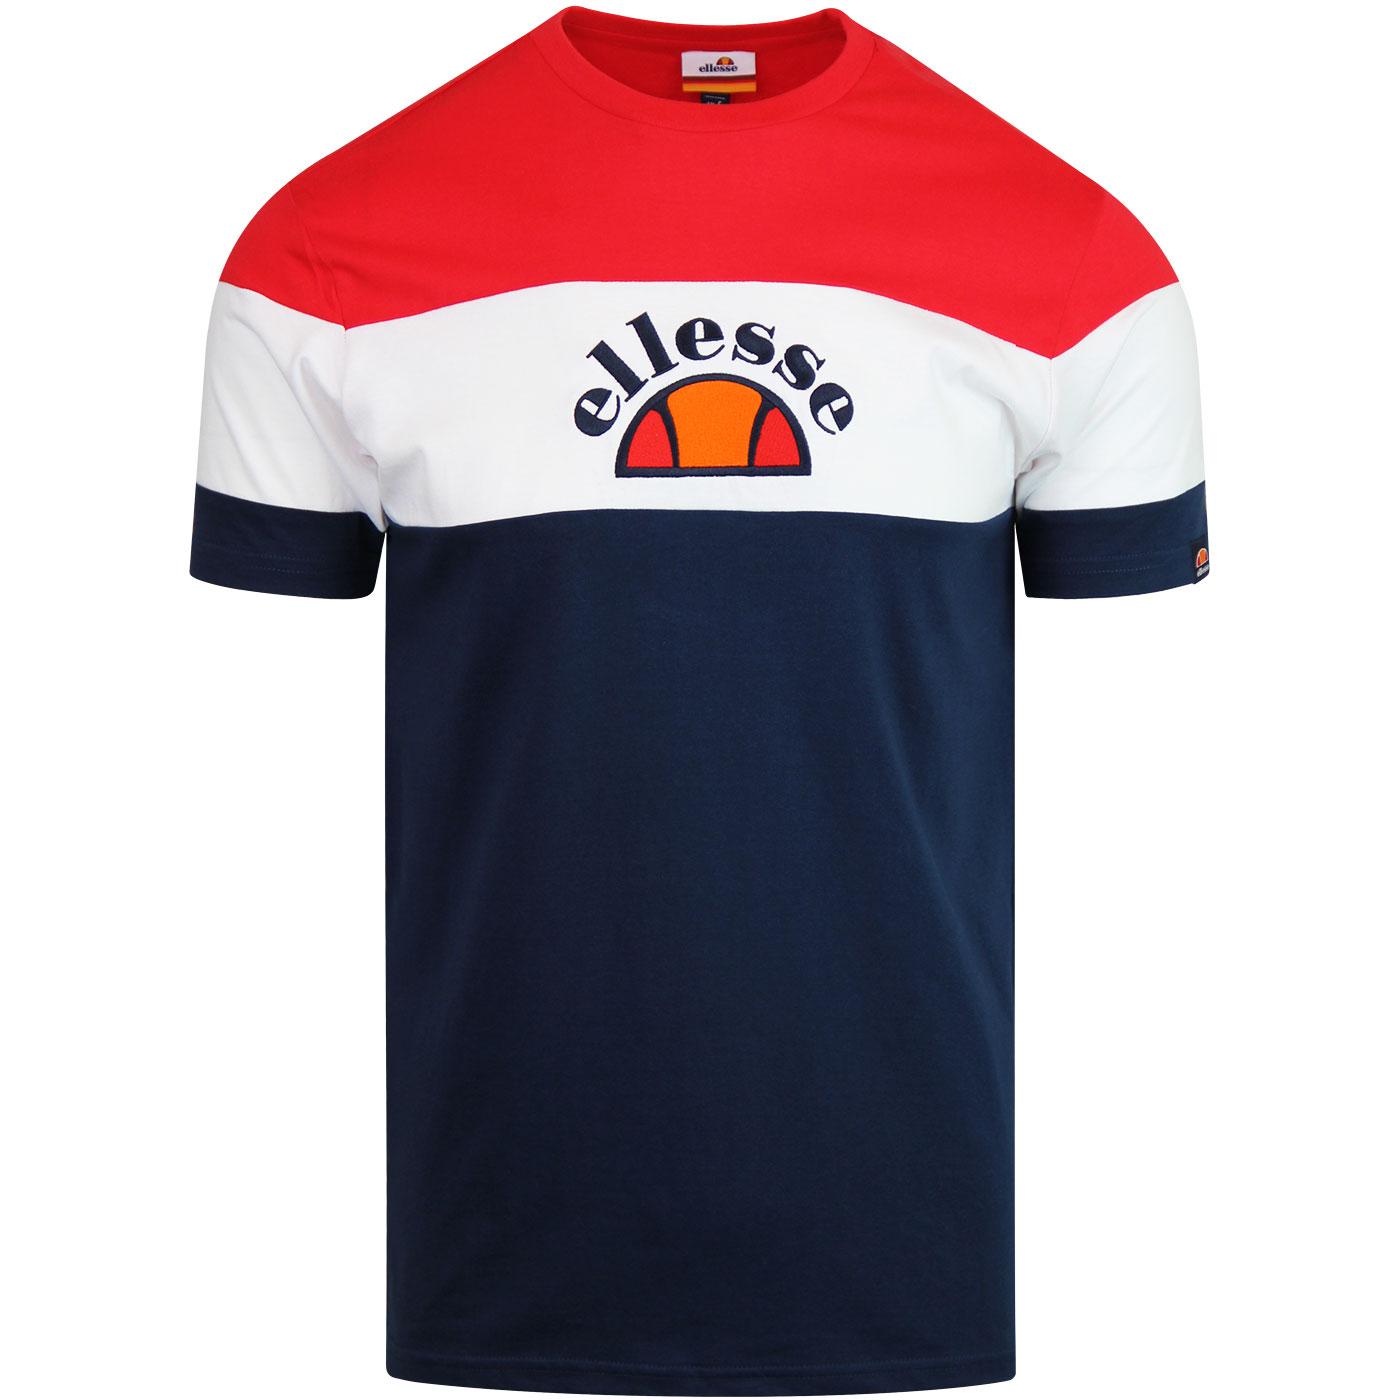 Gubbio ELLESSE Retro 80s Colour Block T-Shirt NAVY